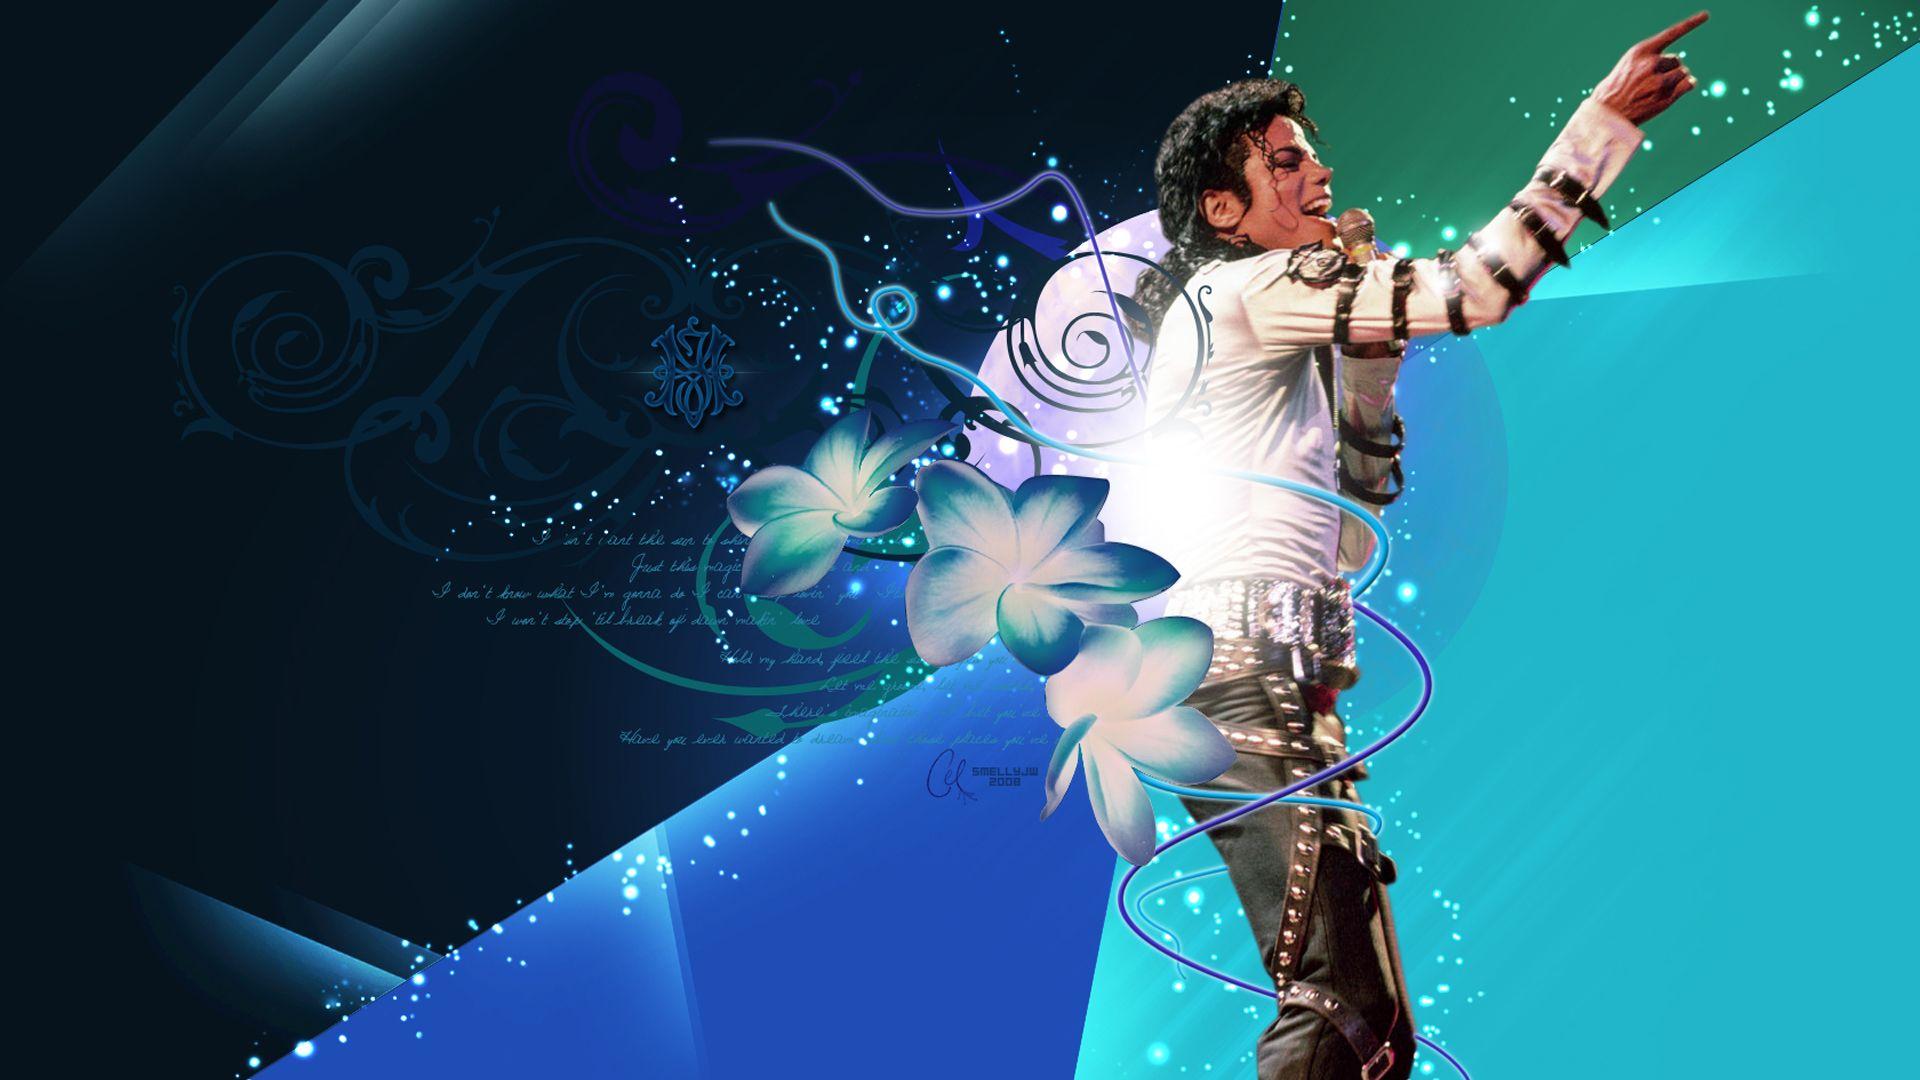 Michael Jackson wallpaper, free Michael Jackson wallpaper download